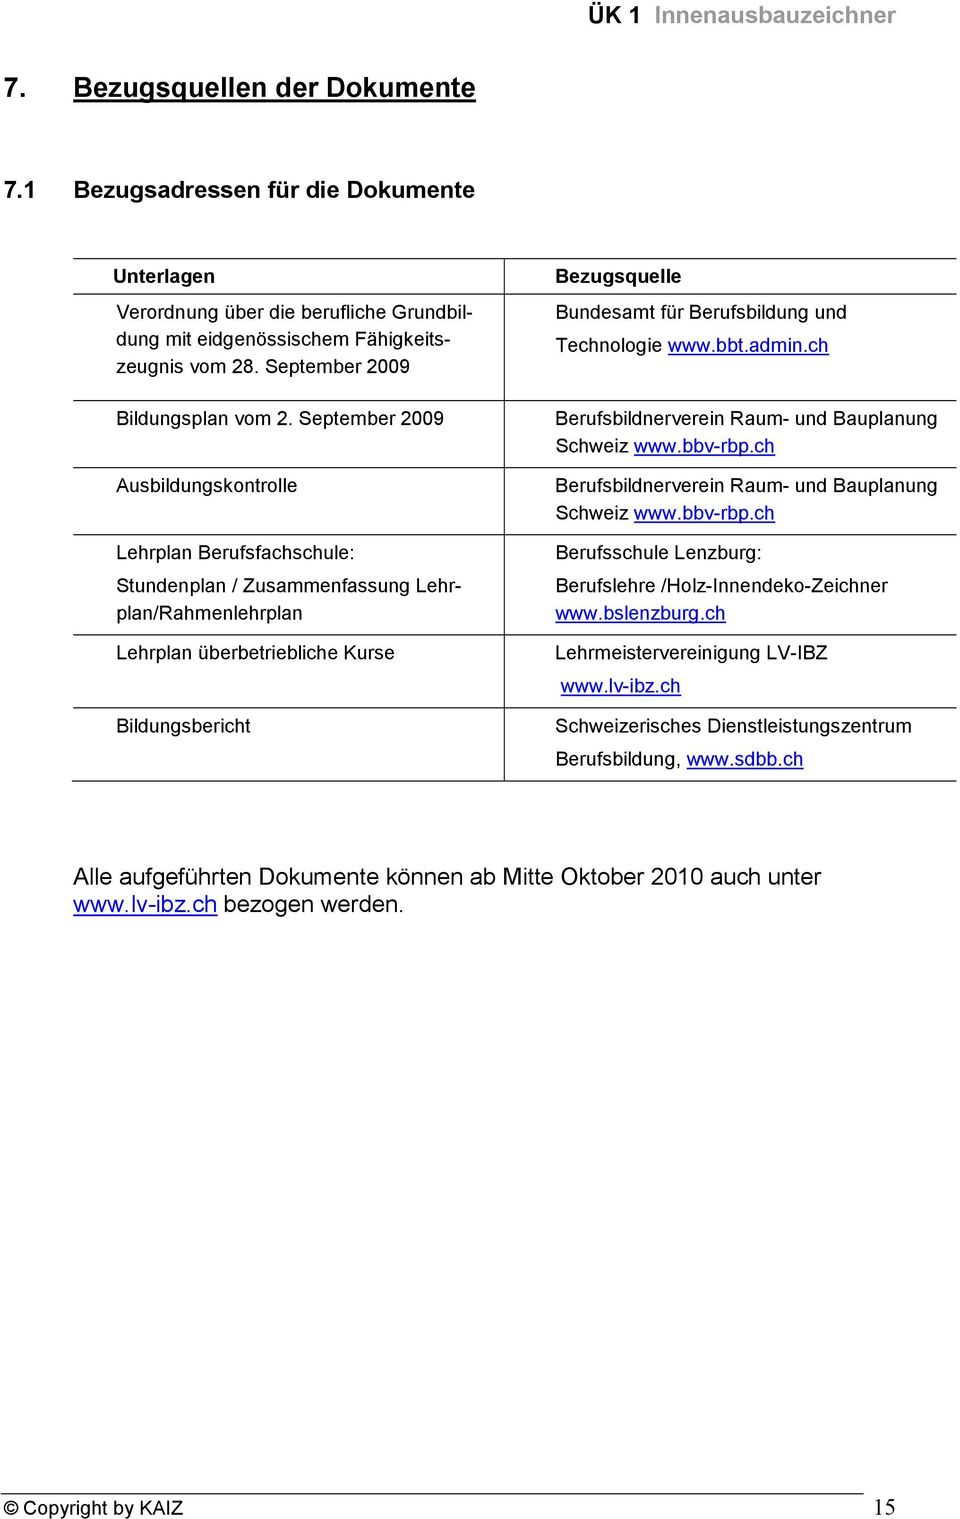 September 2009 Bundesamt für Berufsbildung und Bildungsplan vom 2. September 2009 Berufsbildnerverein Raum- und Bauplanung Schweiz www.bbv-rbp.